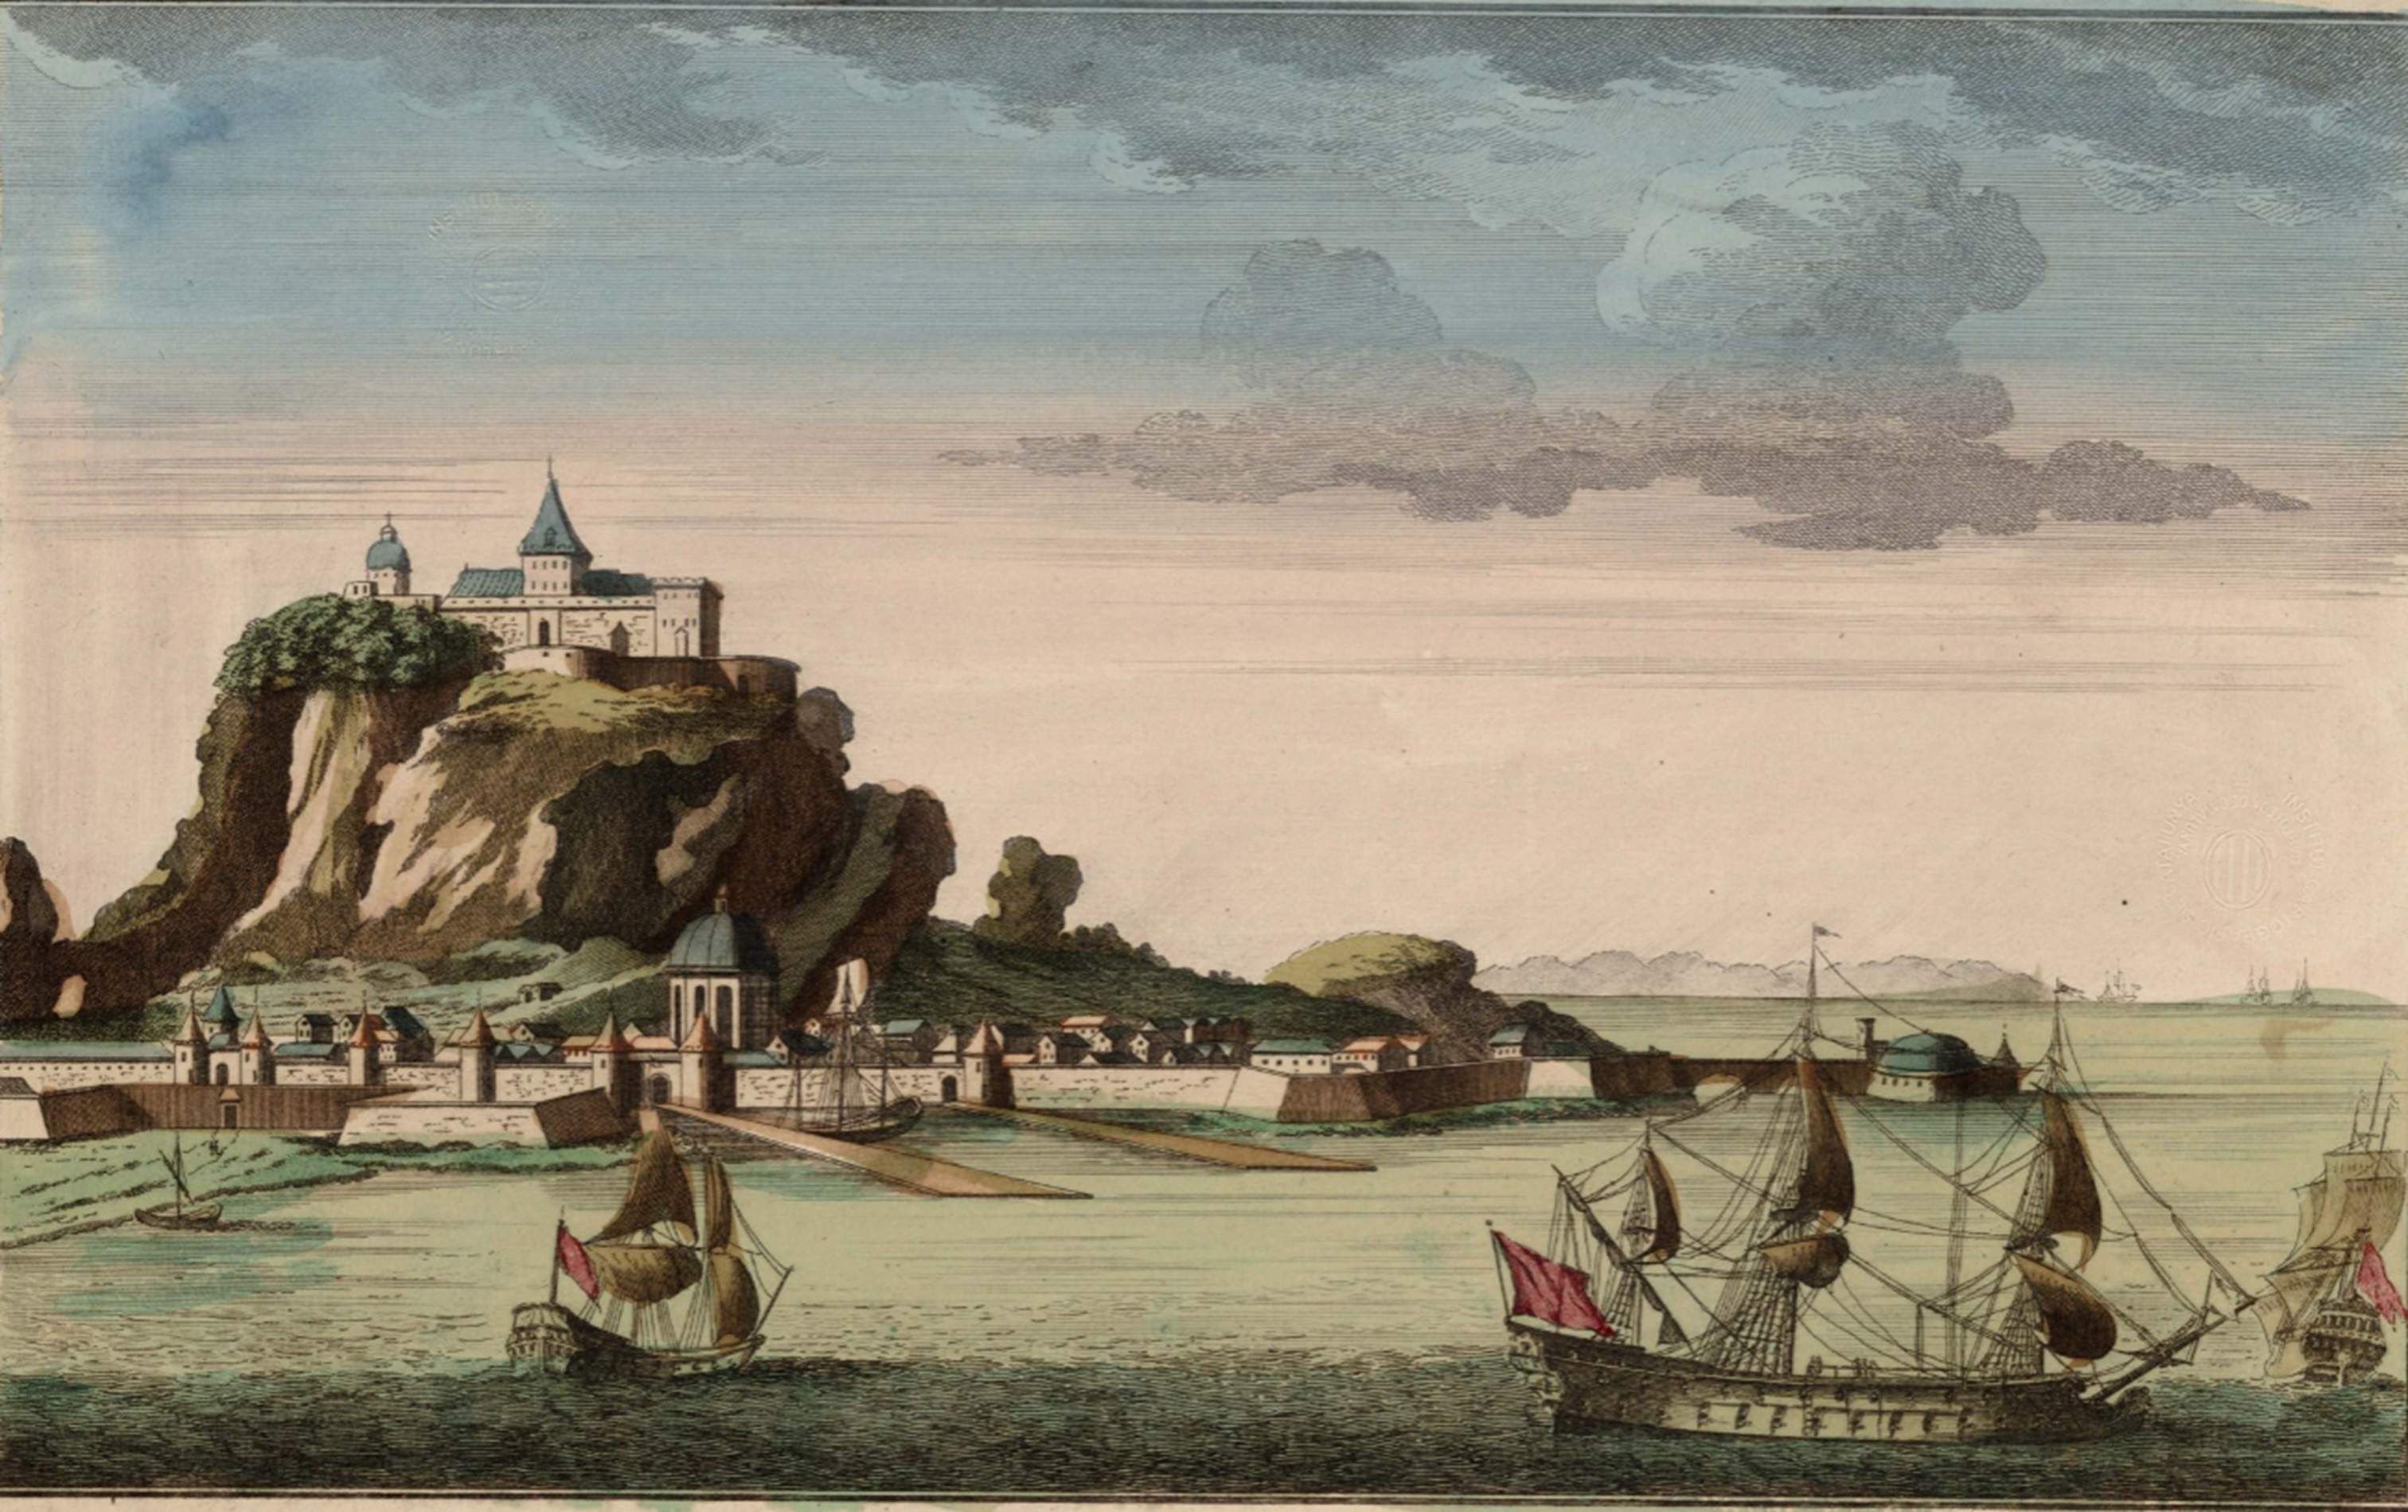 Gravat de Gibraltar (principis del segle XVIII). Font Cartoteca de Catalunya